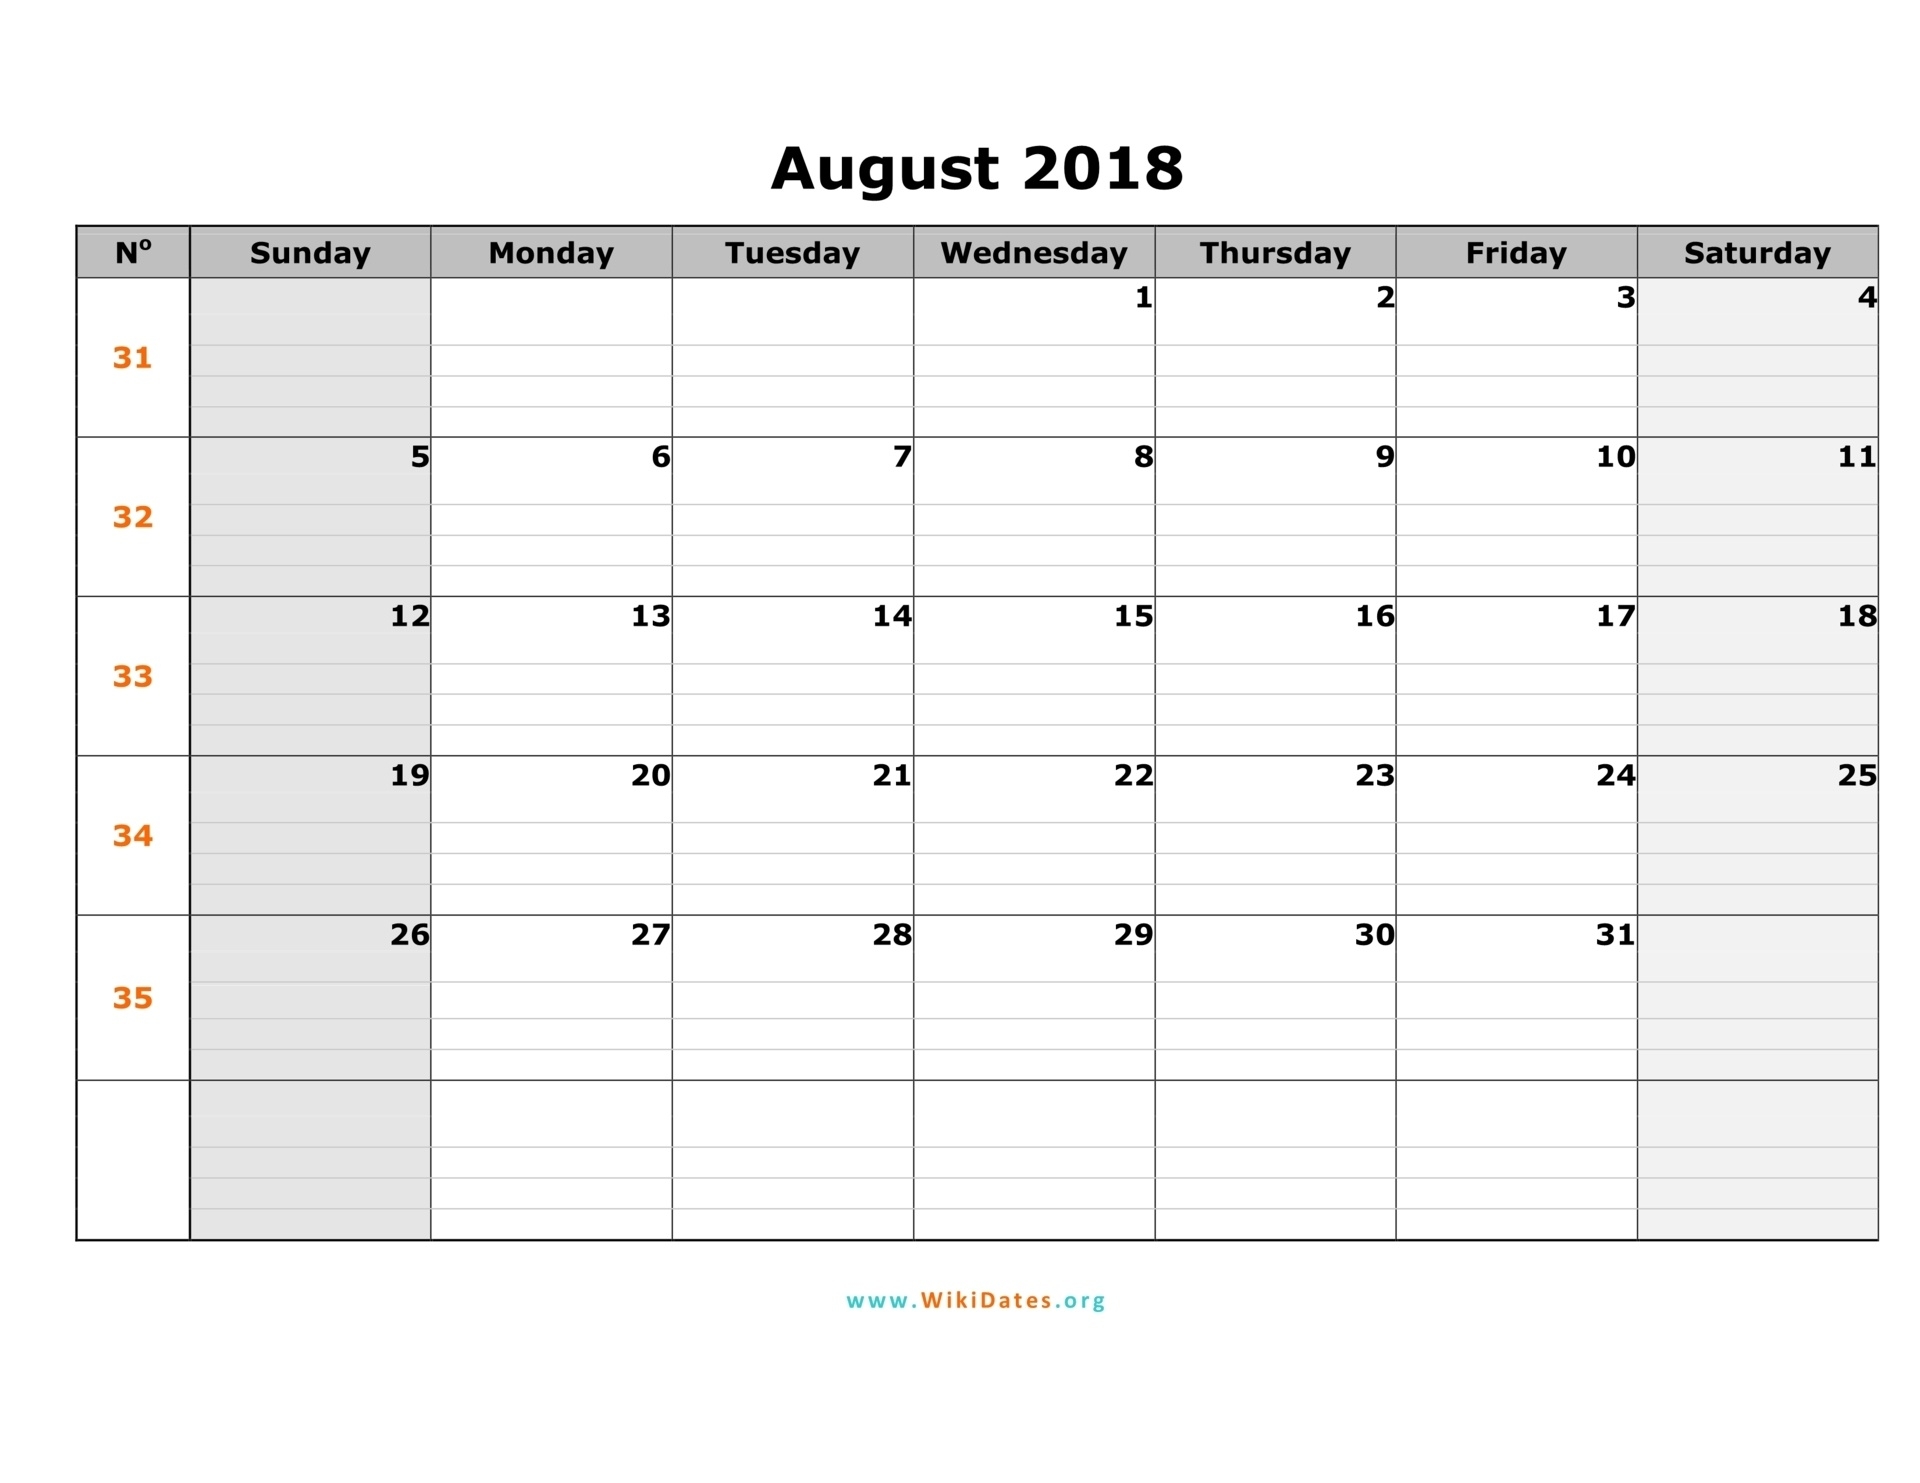 August 2018 Calendar | Wikidates  Weekly Calandar Template Starting Monday